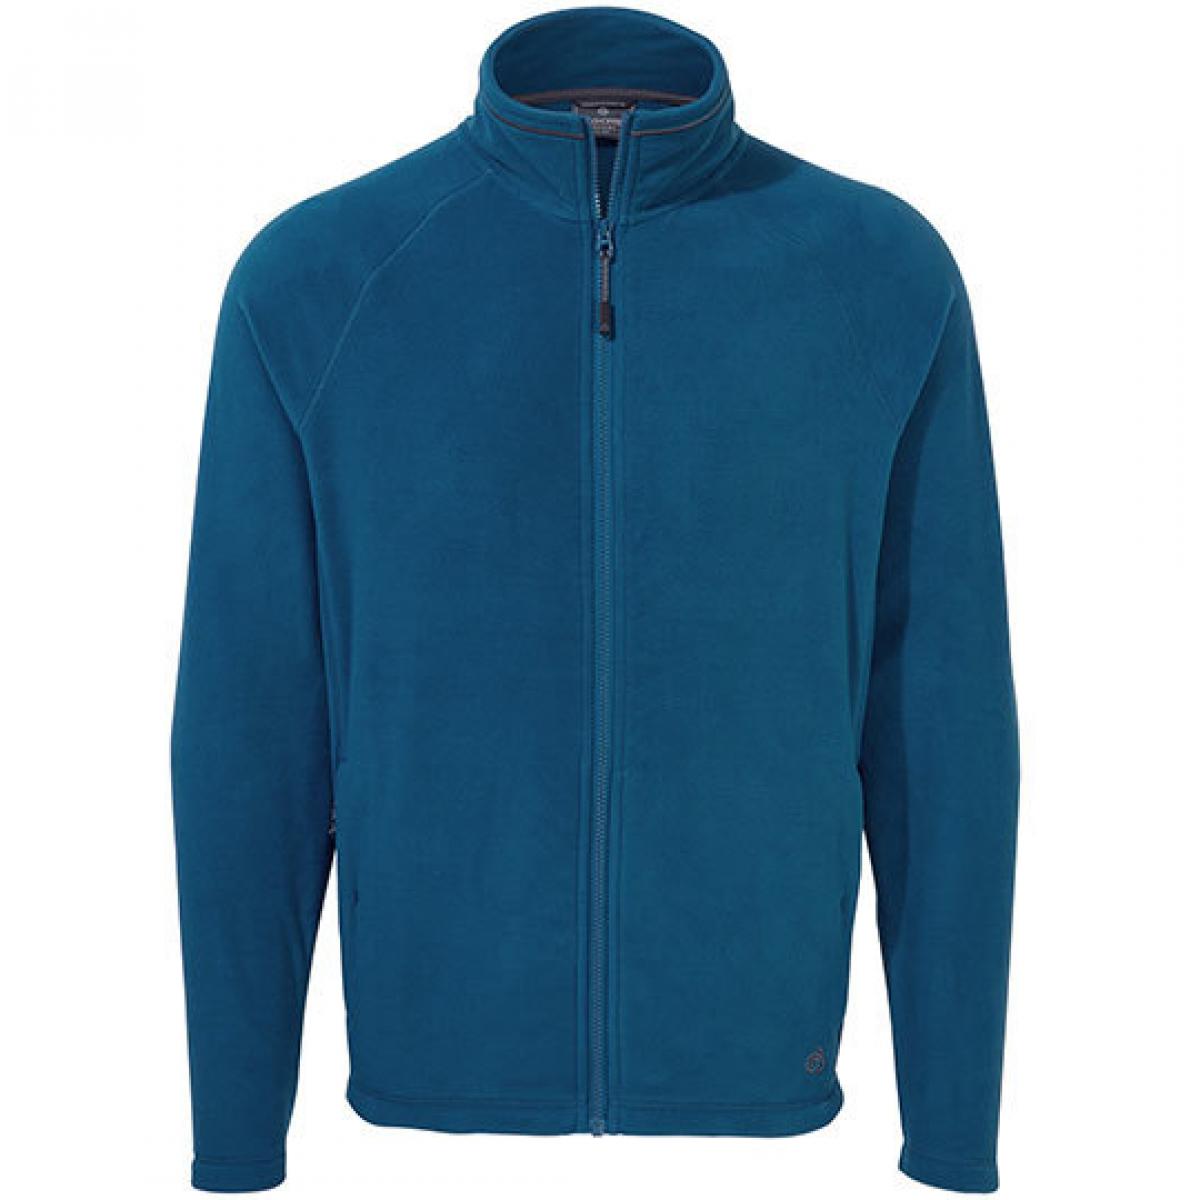 Hersteller: Craghoppers Expert Herstellernummer: CEA001 Artikelbezeichnung: Expert Corey 200 Fleece Jacket Farbe: Poseidon Blue